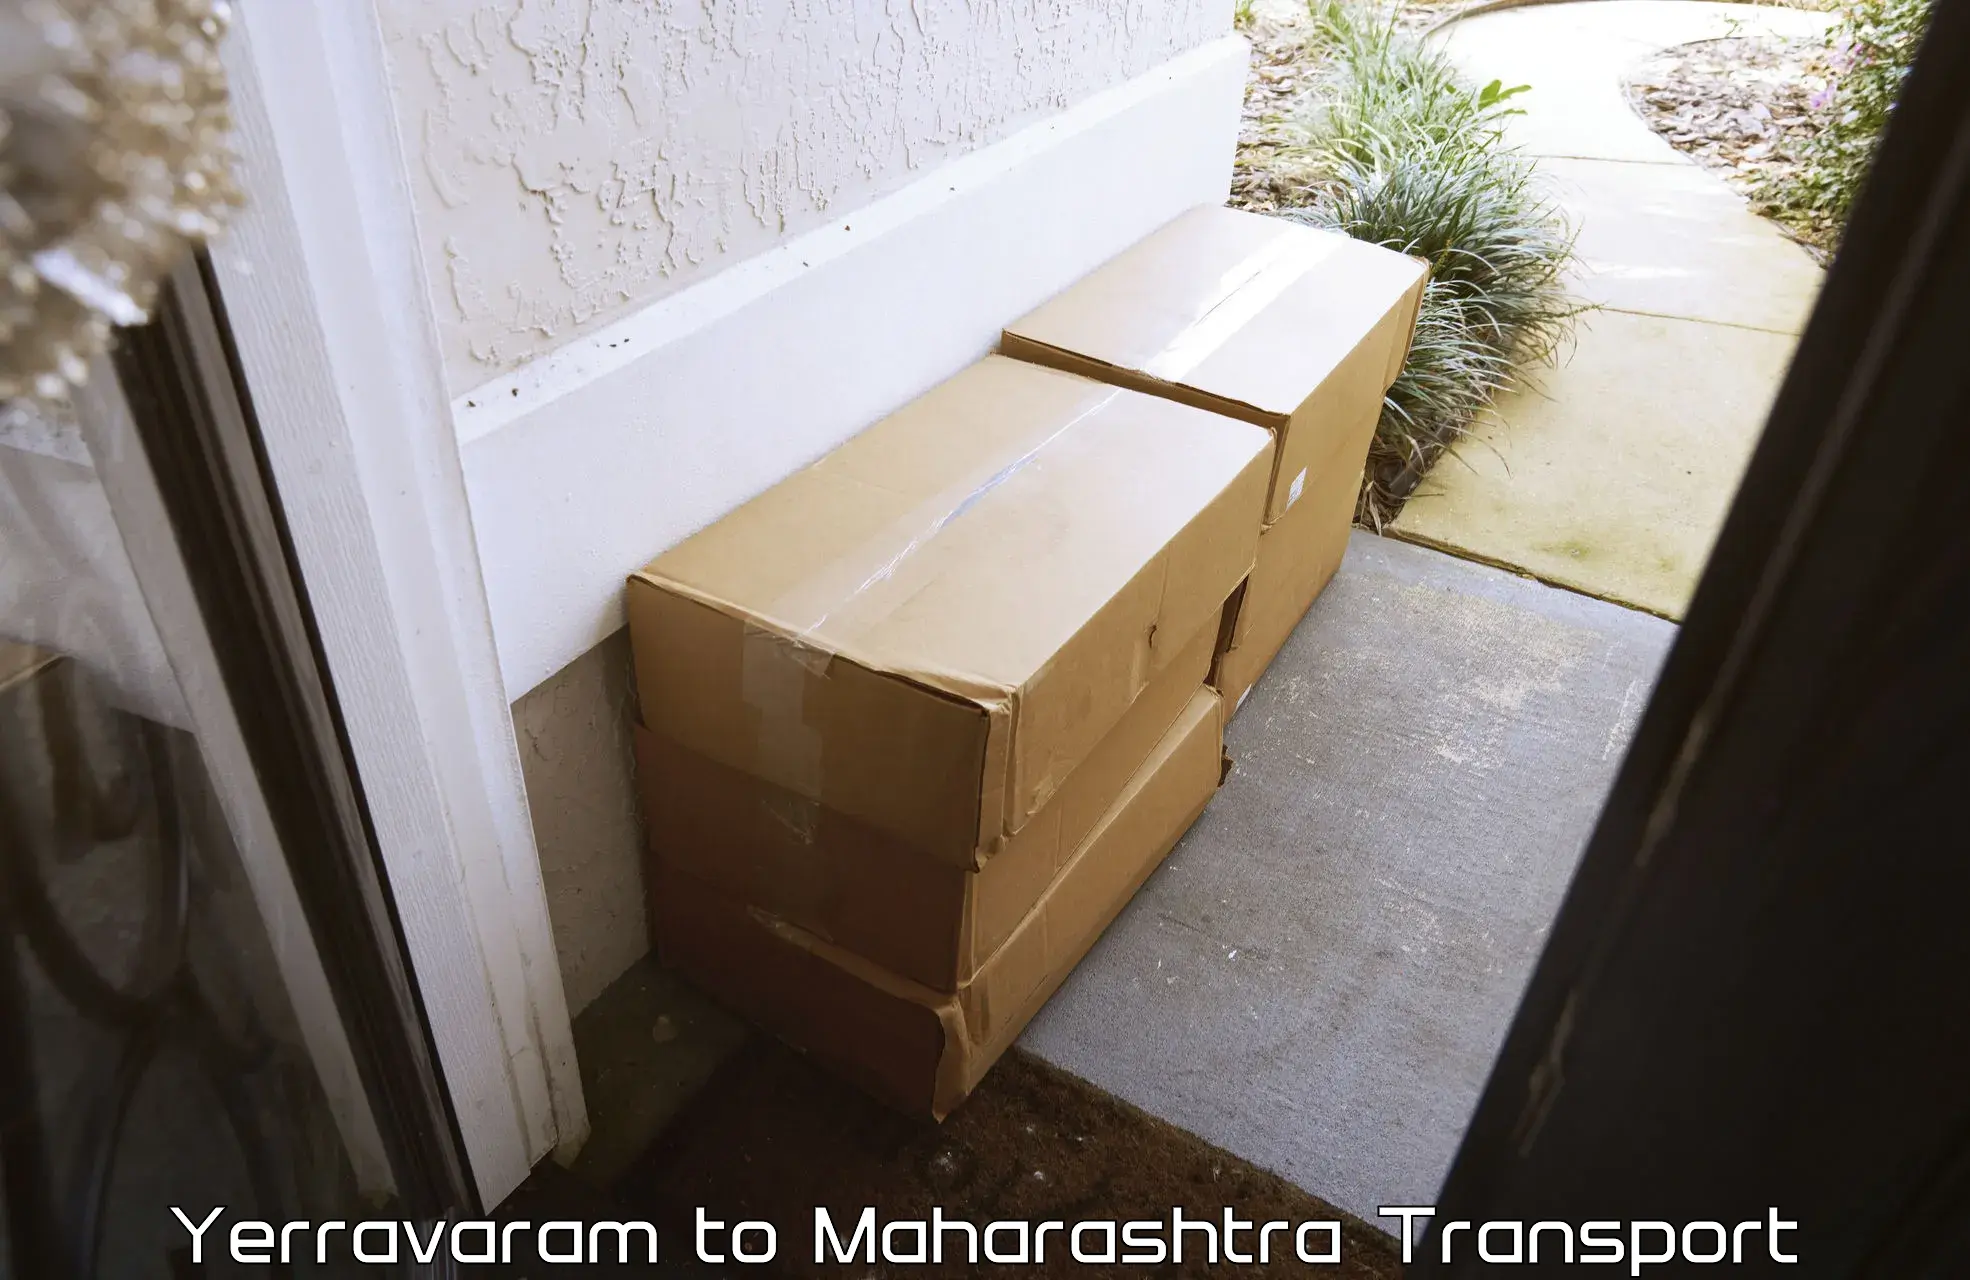 Cycle transportation service Yerravaram to Dr Babasaheb Ambedkar Marathwada University Aurangabad